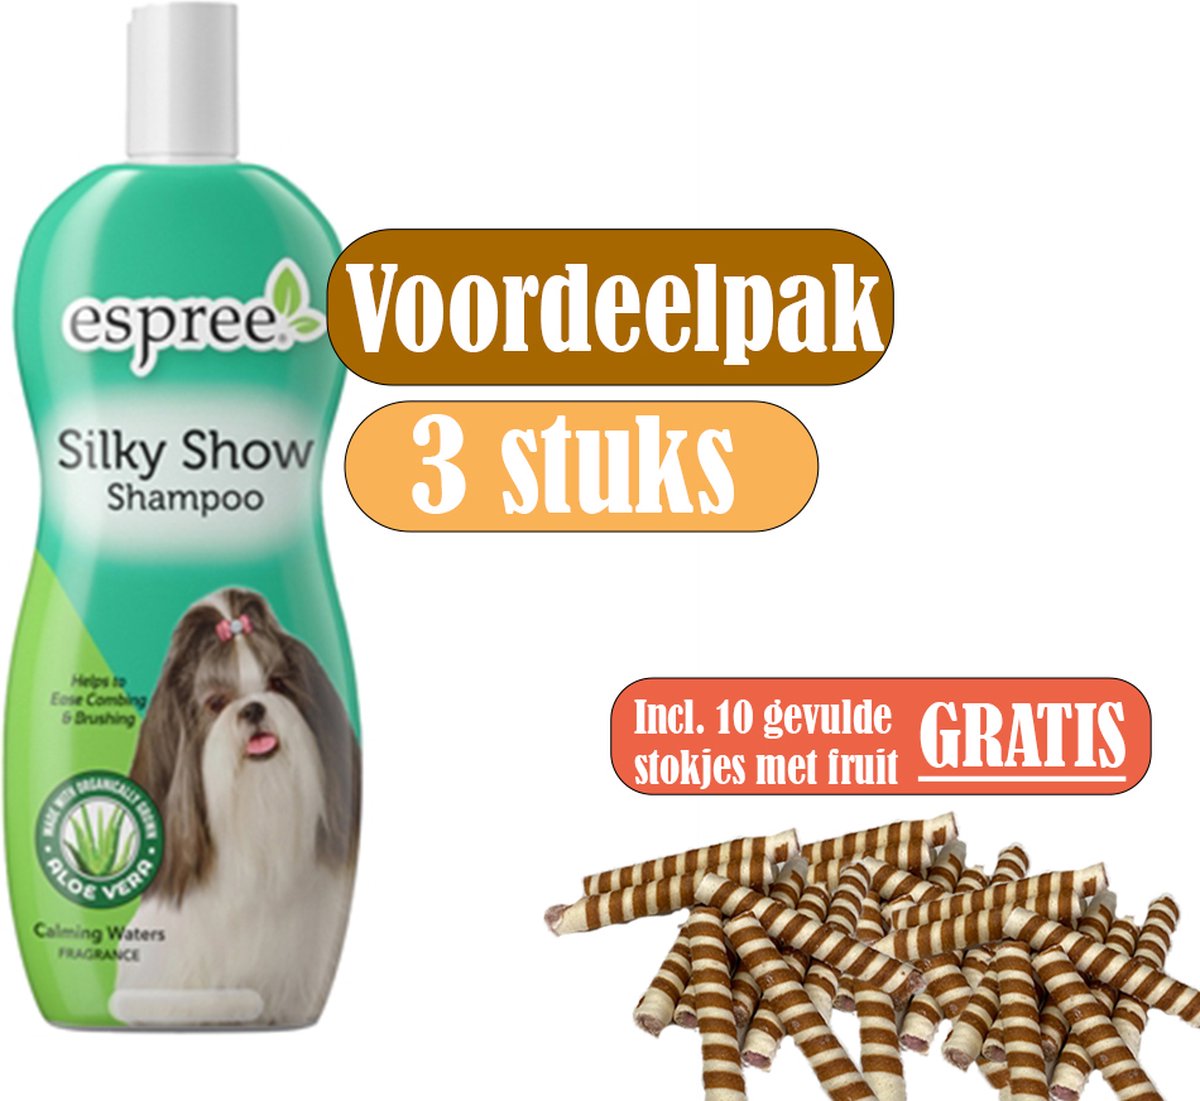 Espree Shampoo Silky Show - Voordeelpak 3 stuks - inclusief gratis stokjes gevuld met fruit (10 stuks)